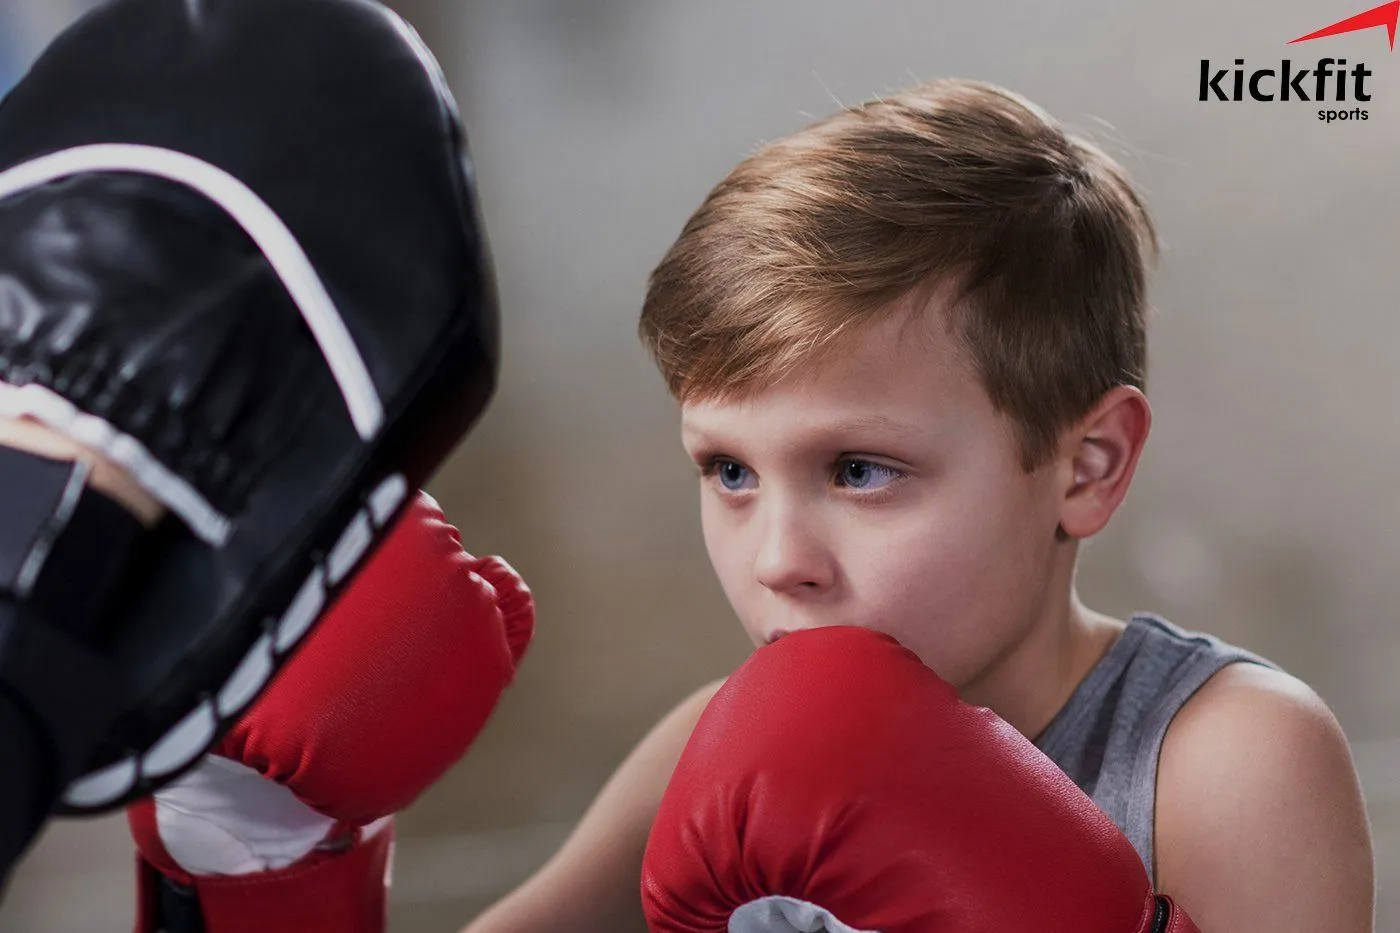 Tập Kickboxing cho trẻ em liệu có an toàn hay không?